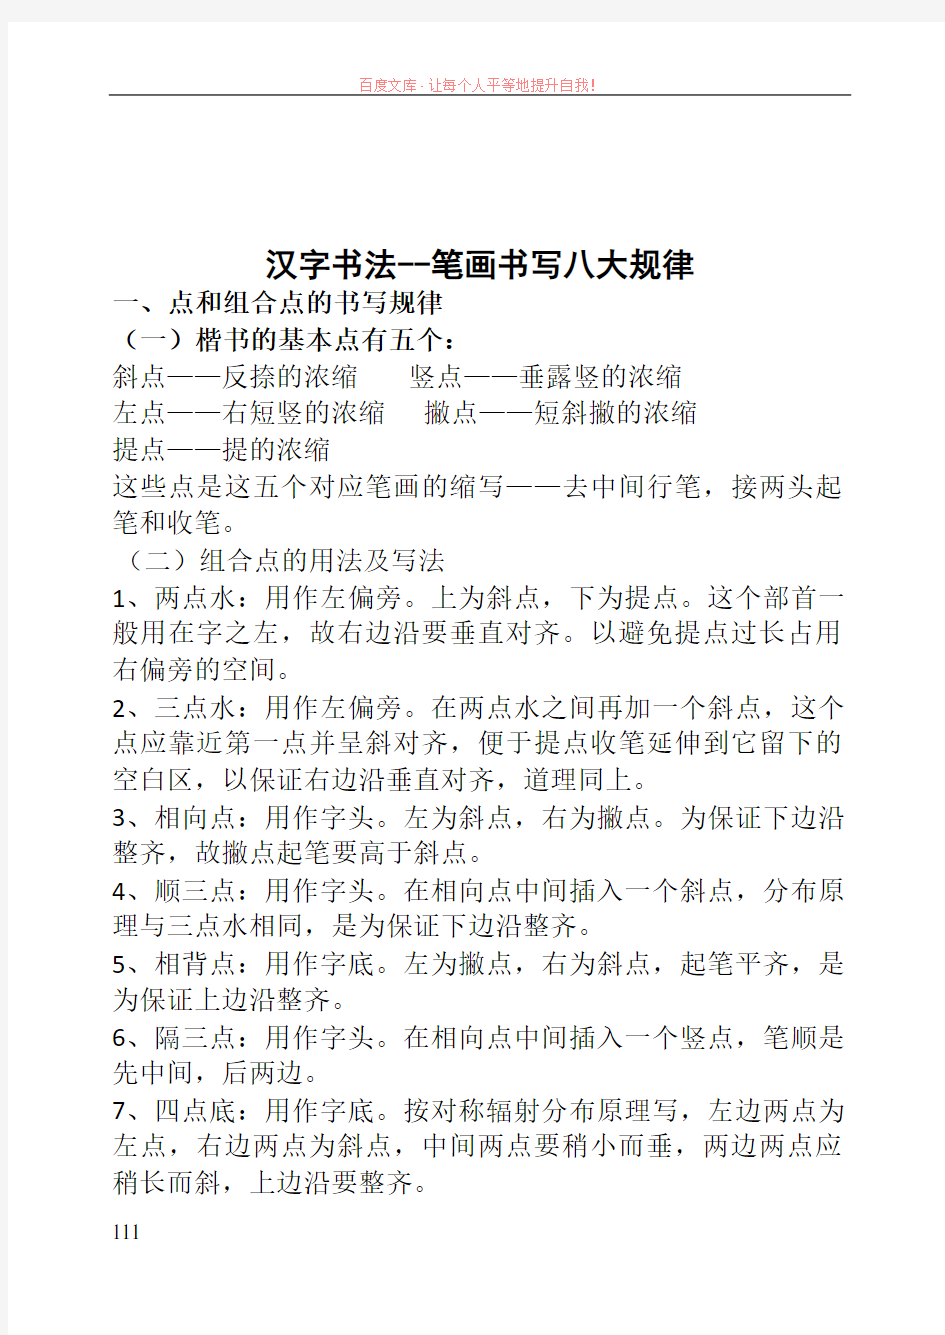 (已打印)汉字书法笔画书写八大规律20190416